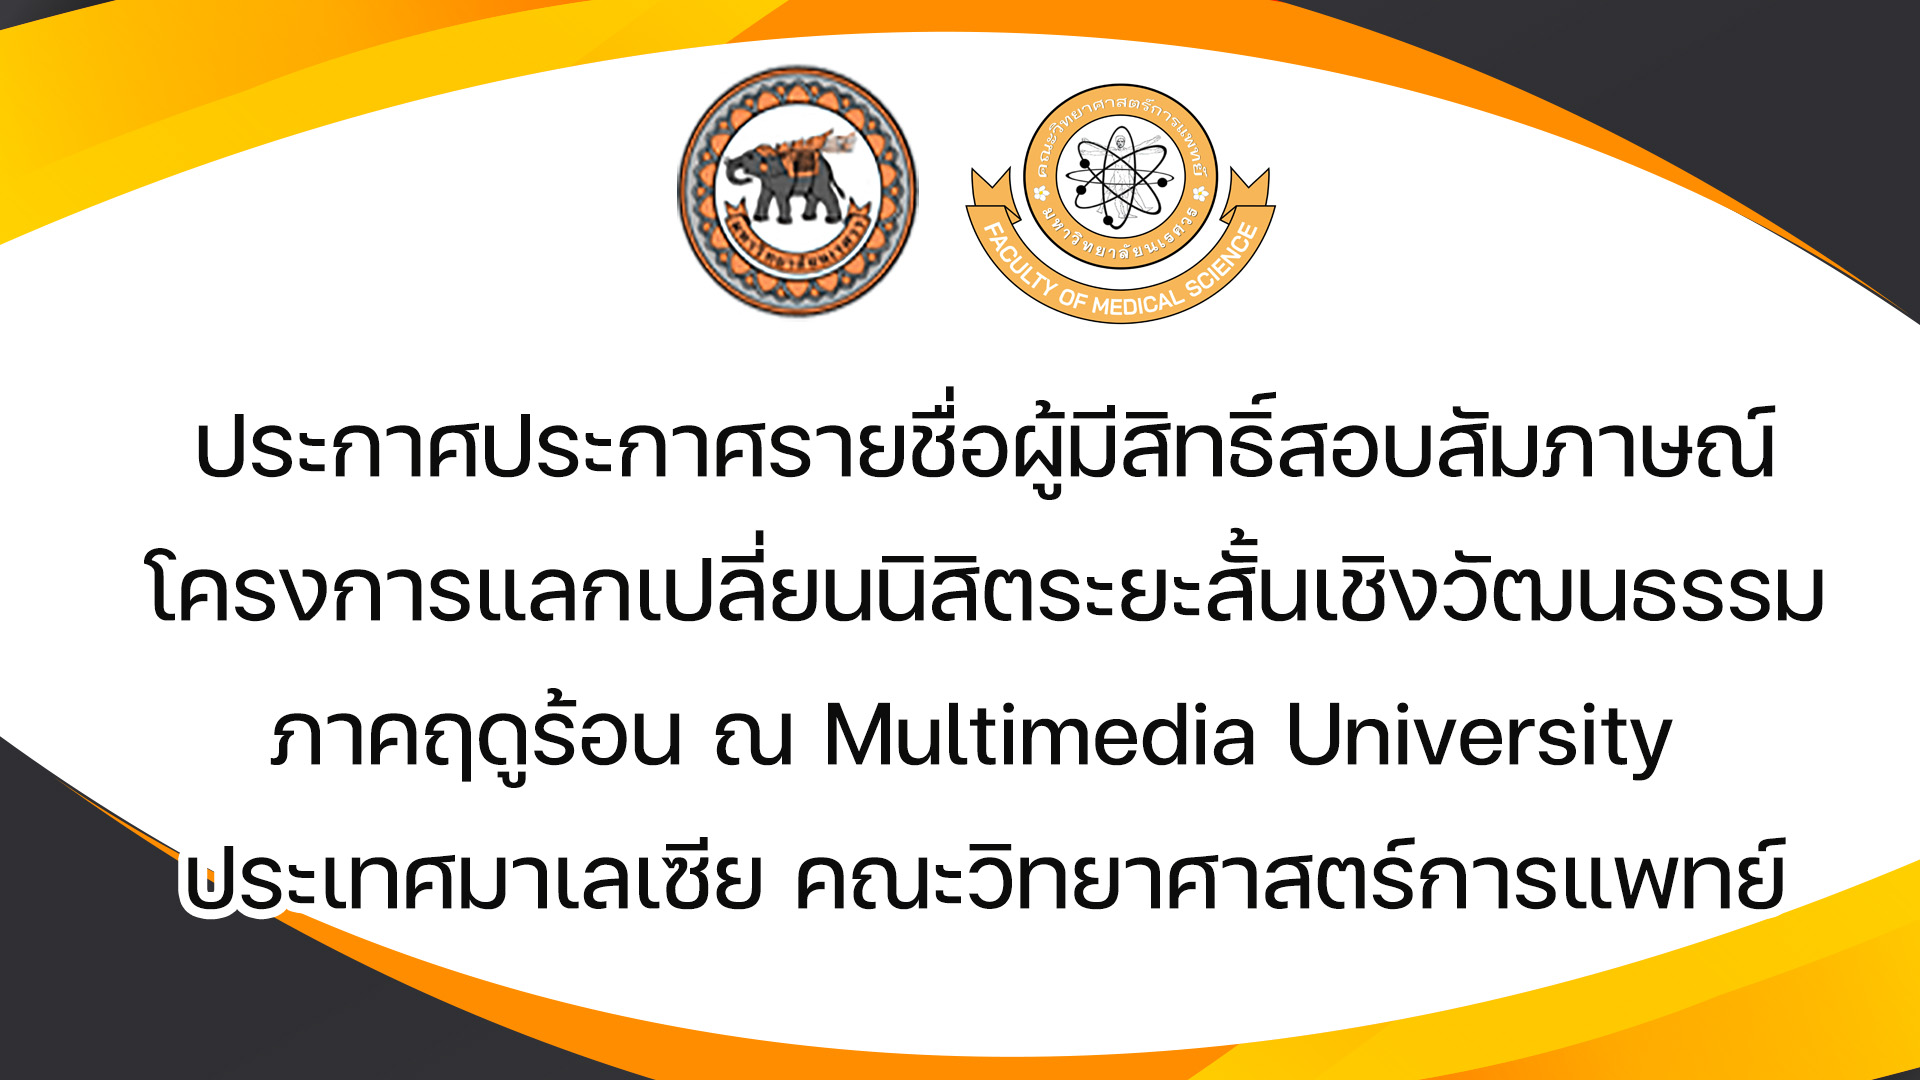 ประกาศรายชื่อผู้มีสิทธิ์สอบสัมภาษณ์โครงการแลกเปลี่ยนนิสิตระยะสั้นเชิงวัฒนธรรมภาคฤดูร้อน ณ Multimedia University ประเทศมาเลเซีย คณะวิทยาศาสตร์การแพทย์